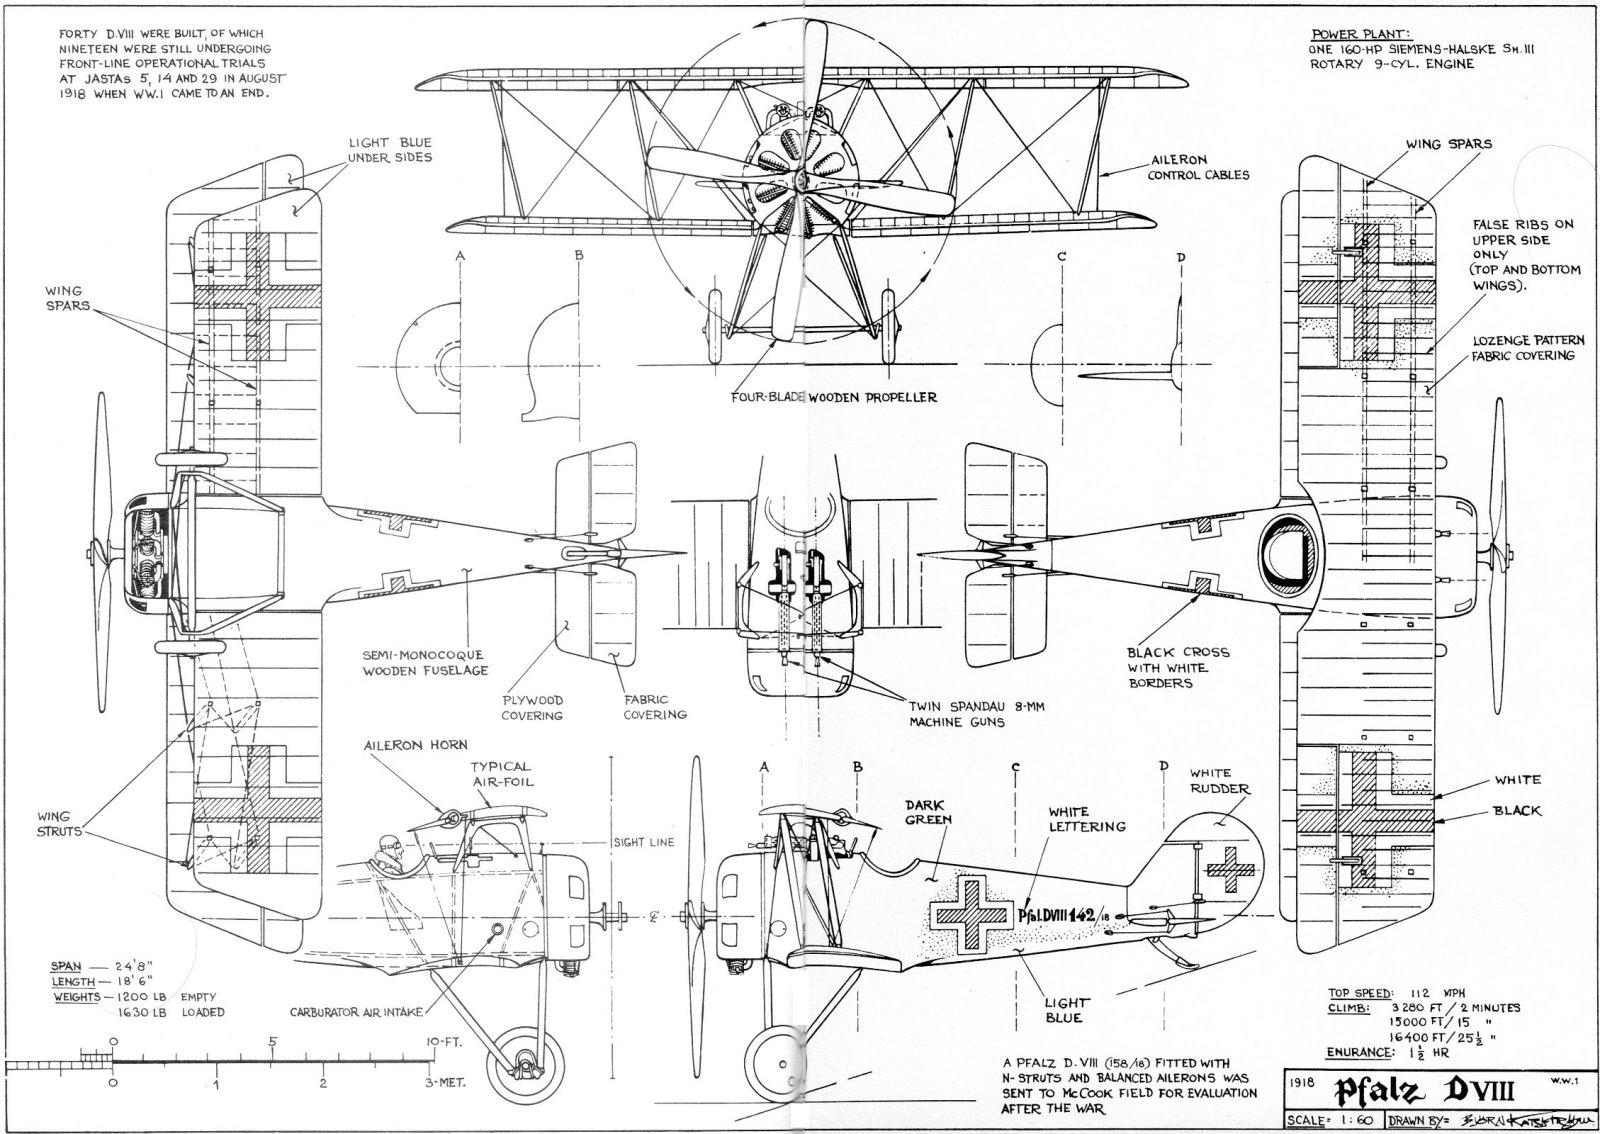 3 View Aircraft Drawings